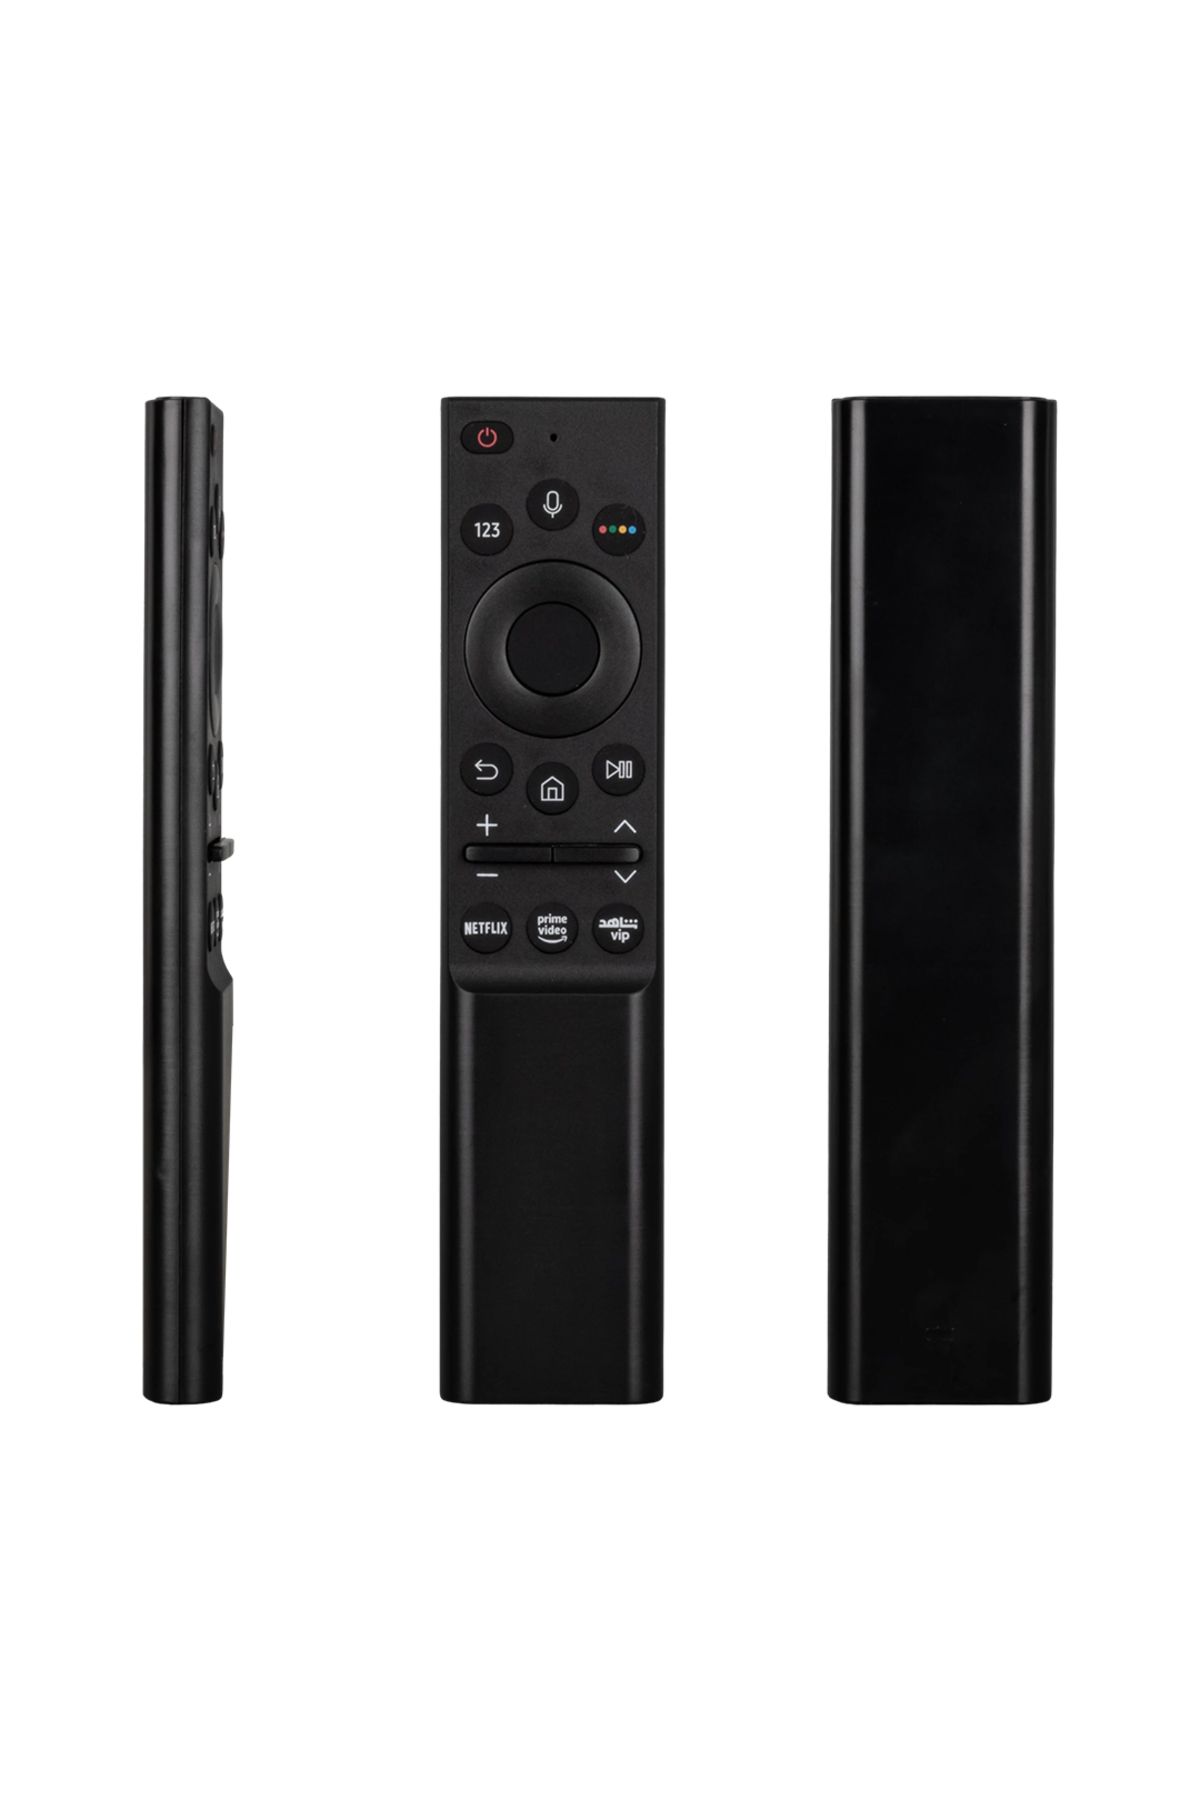 SKY TOPTAN Akıllı TV Kumandası: Samsung RM-G2200 V15 (Netflix, Prime Video, Shahid VIP)